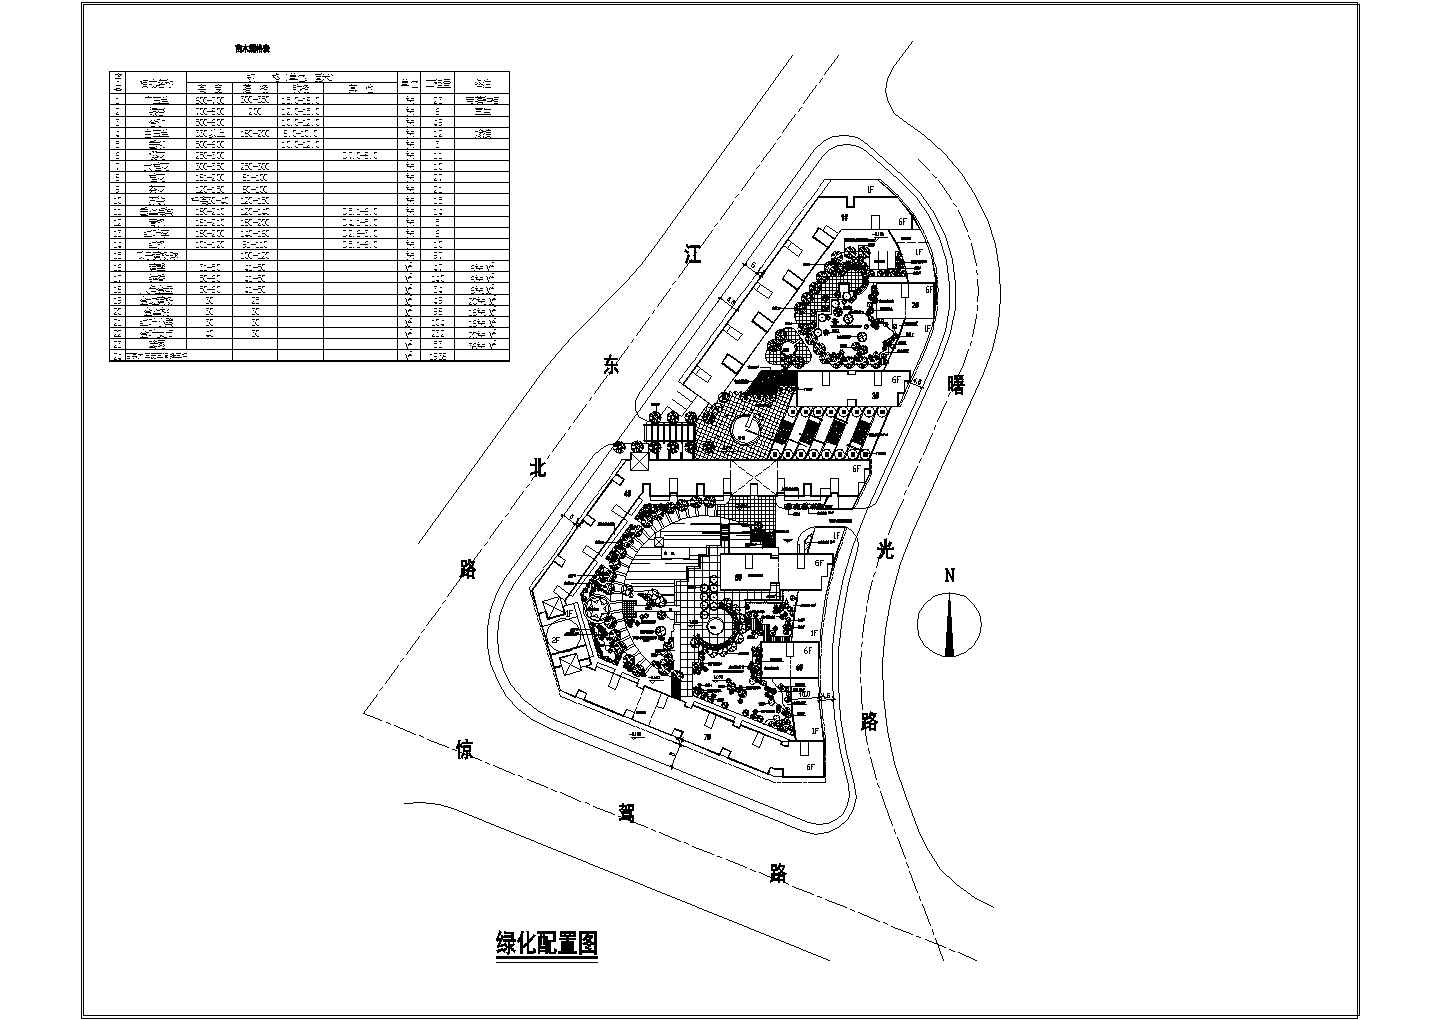 公园广场绿化CAD图纸-小地块景观环境设计绿化配置图